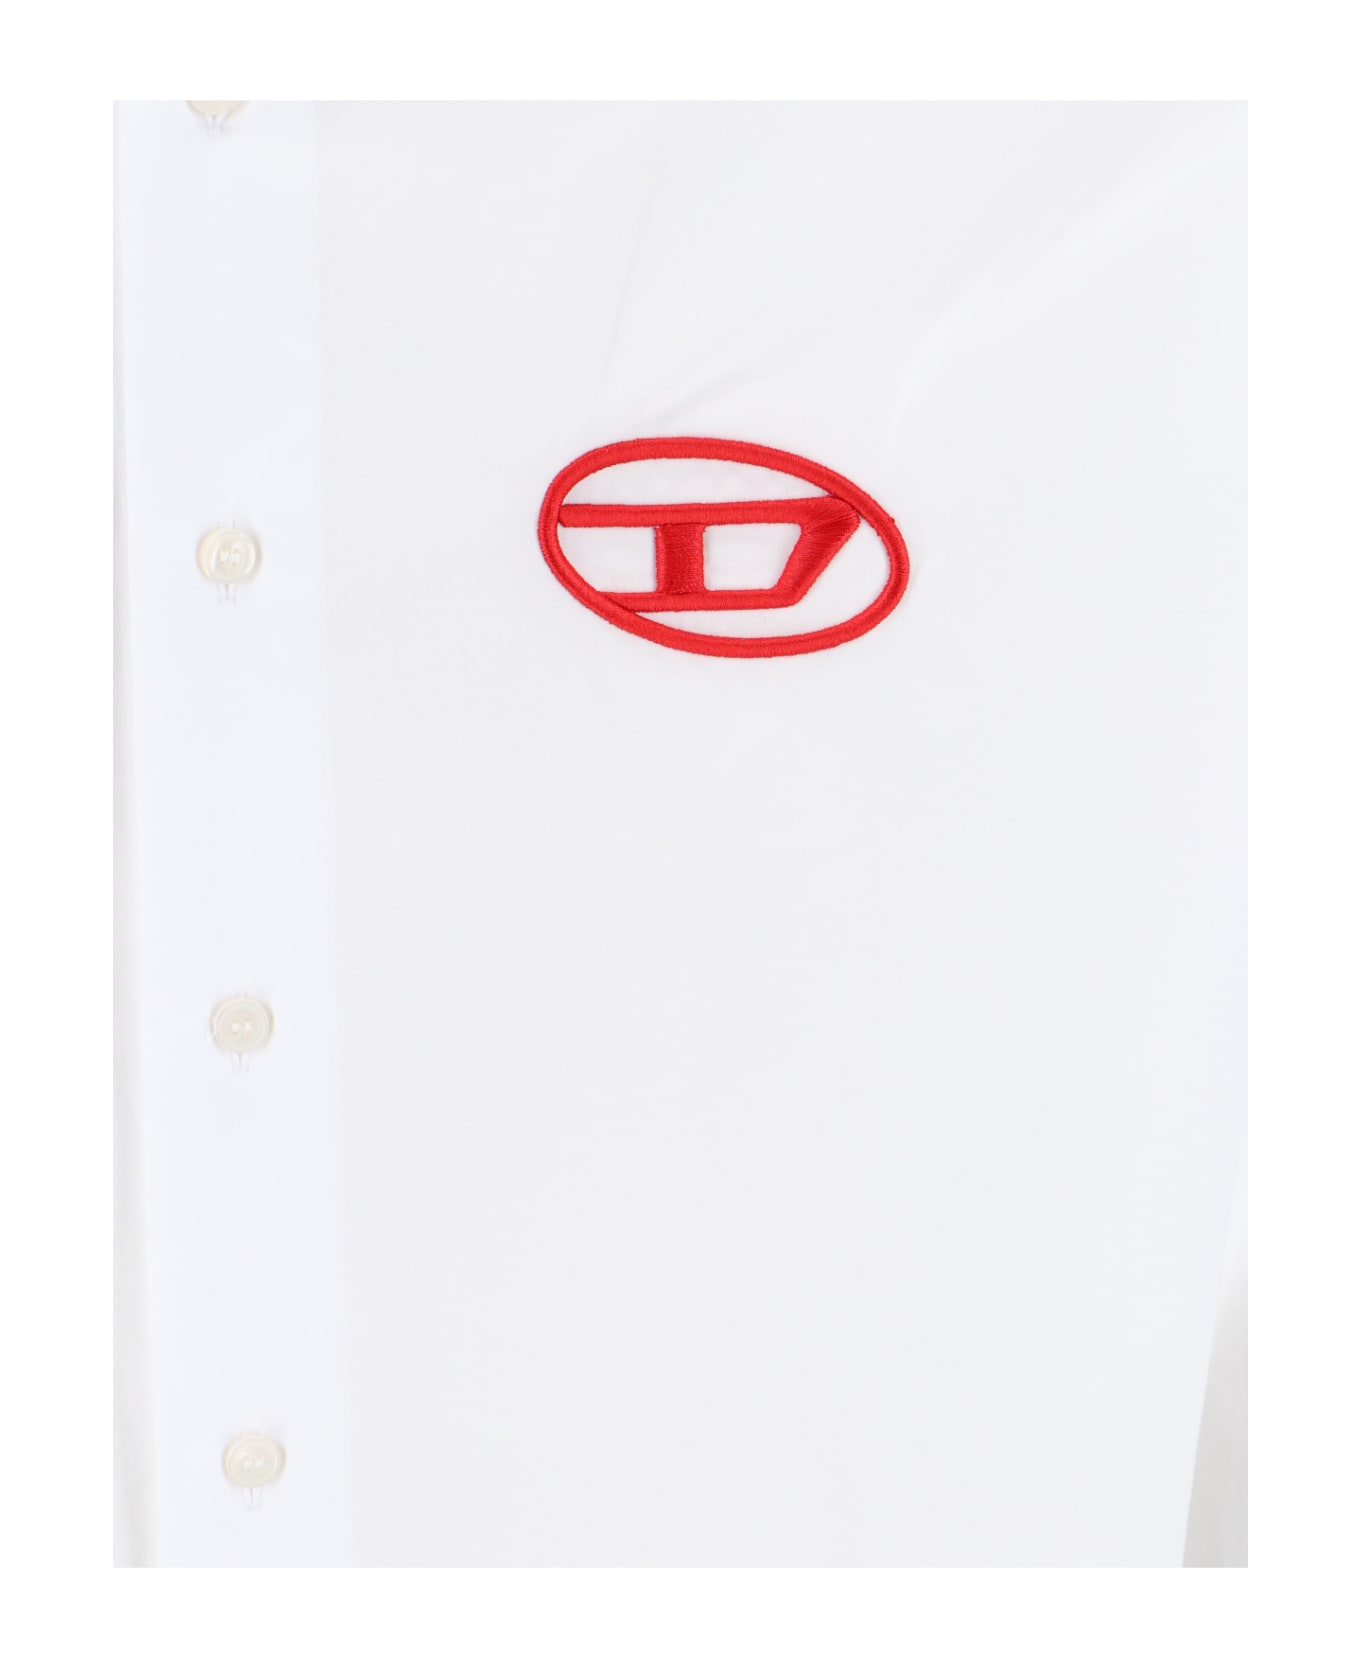 Diesel 'oval-d' Logo Shirt - White